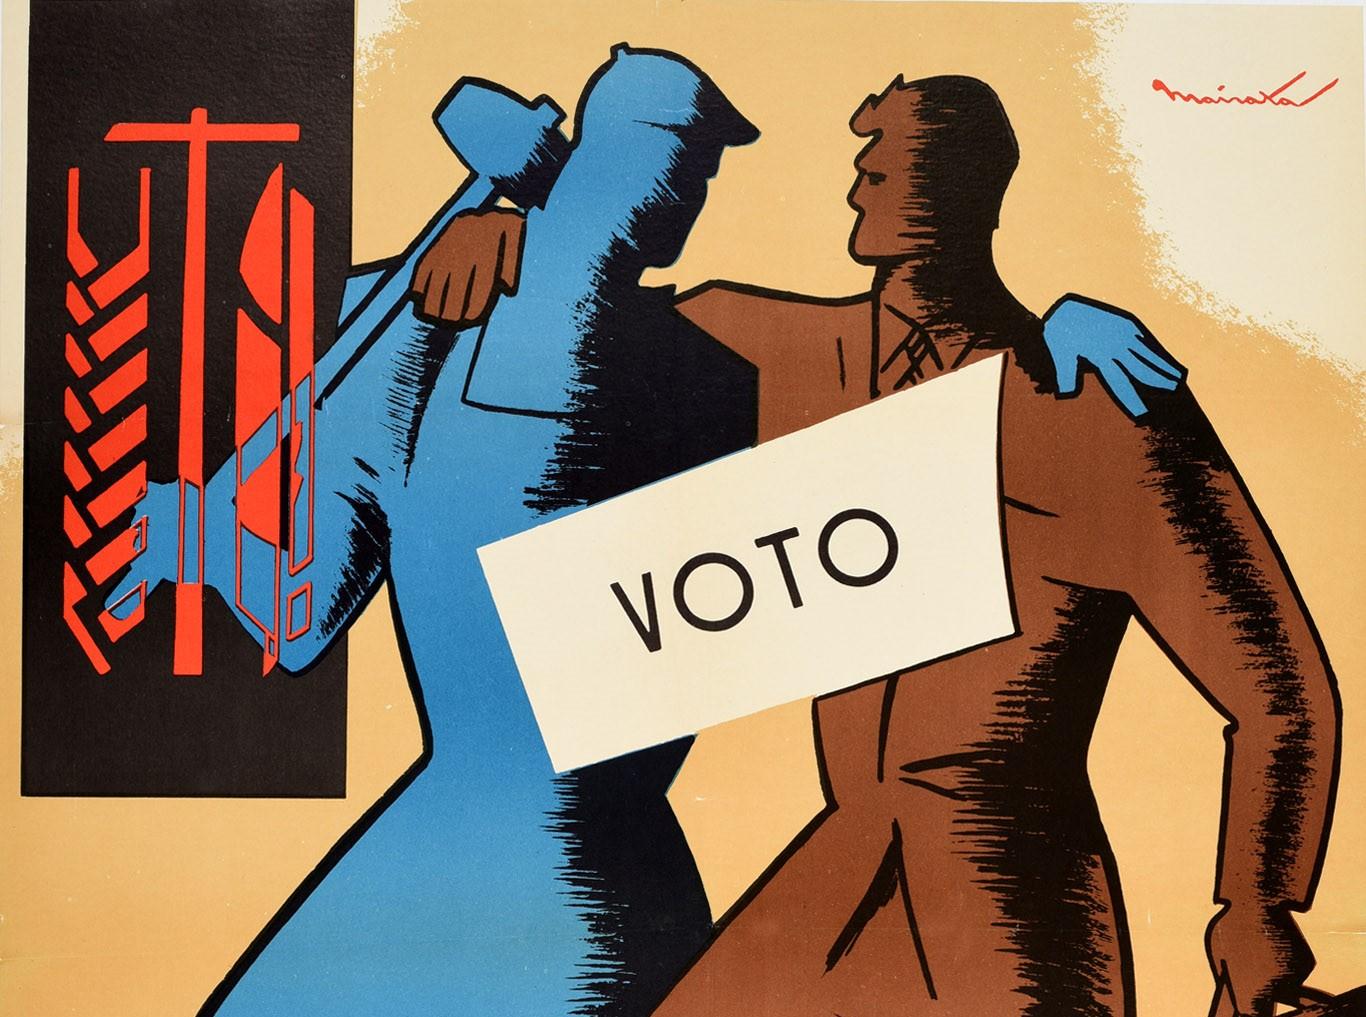 Originales Propagandaplakat - Aufruf zu den Gewerkschaftswahlen 1963 / Elecciones Sindicales Convocatoria 1963 - mit einem großartigen Design, das zwei Arbeiter zeigt, die sich umarmen und ein Zeichen - Voto / Vote - quer über das Bild halten. Der